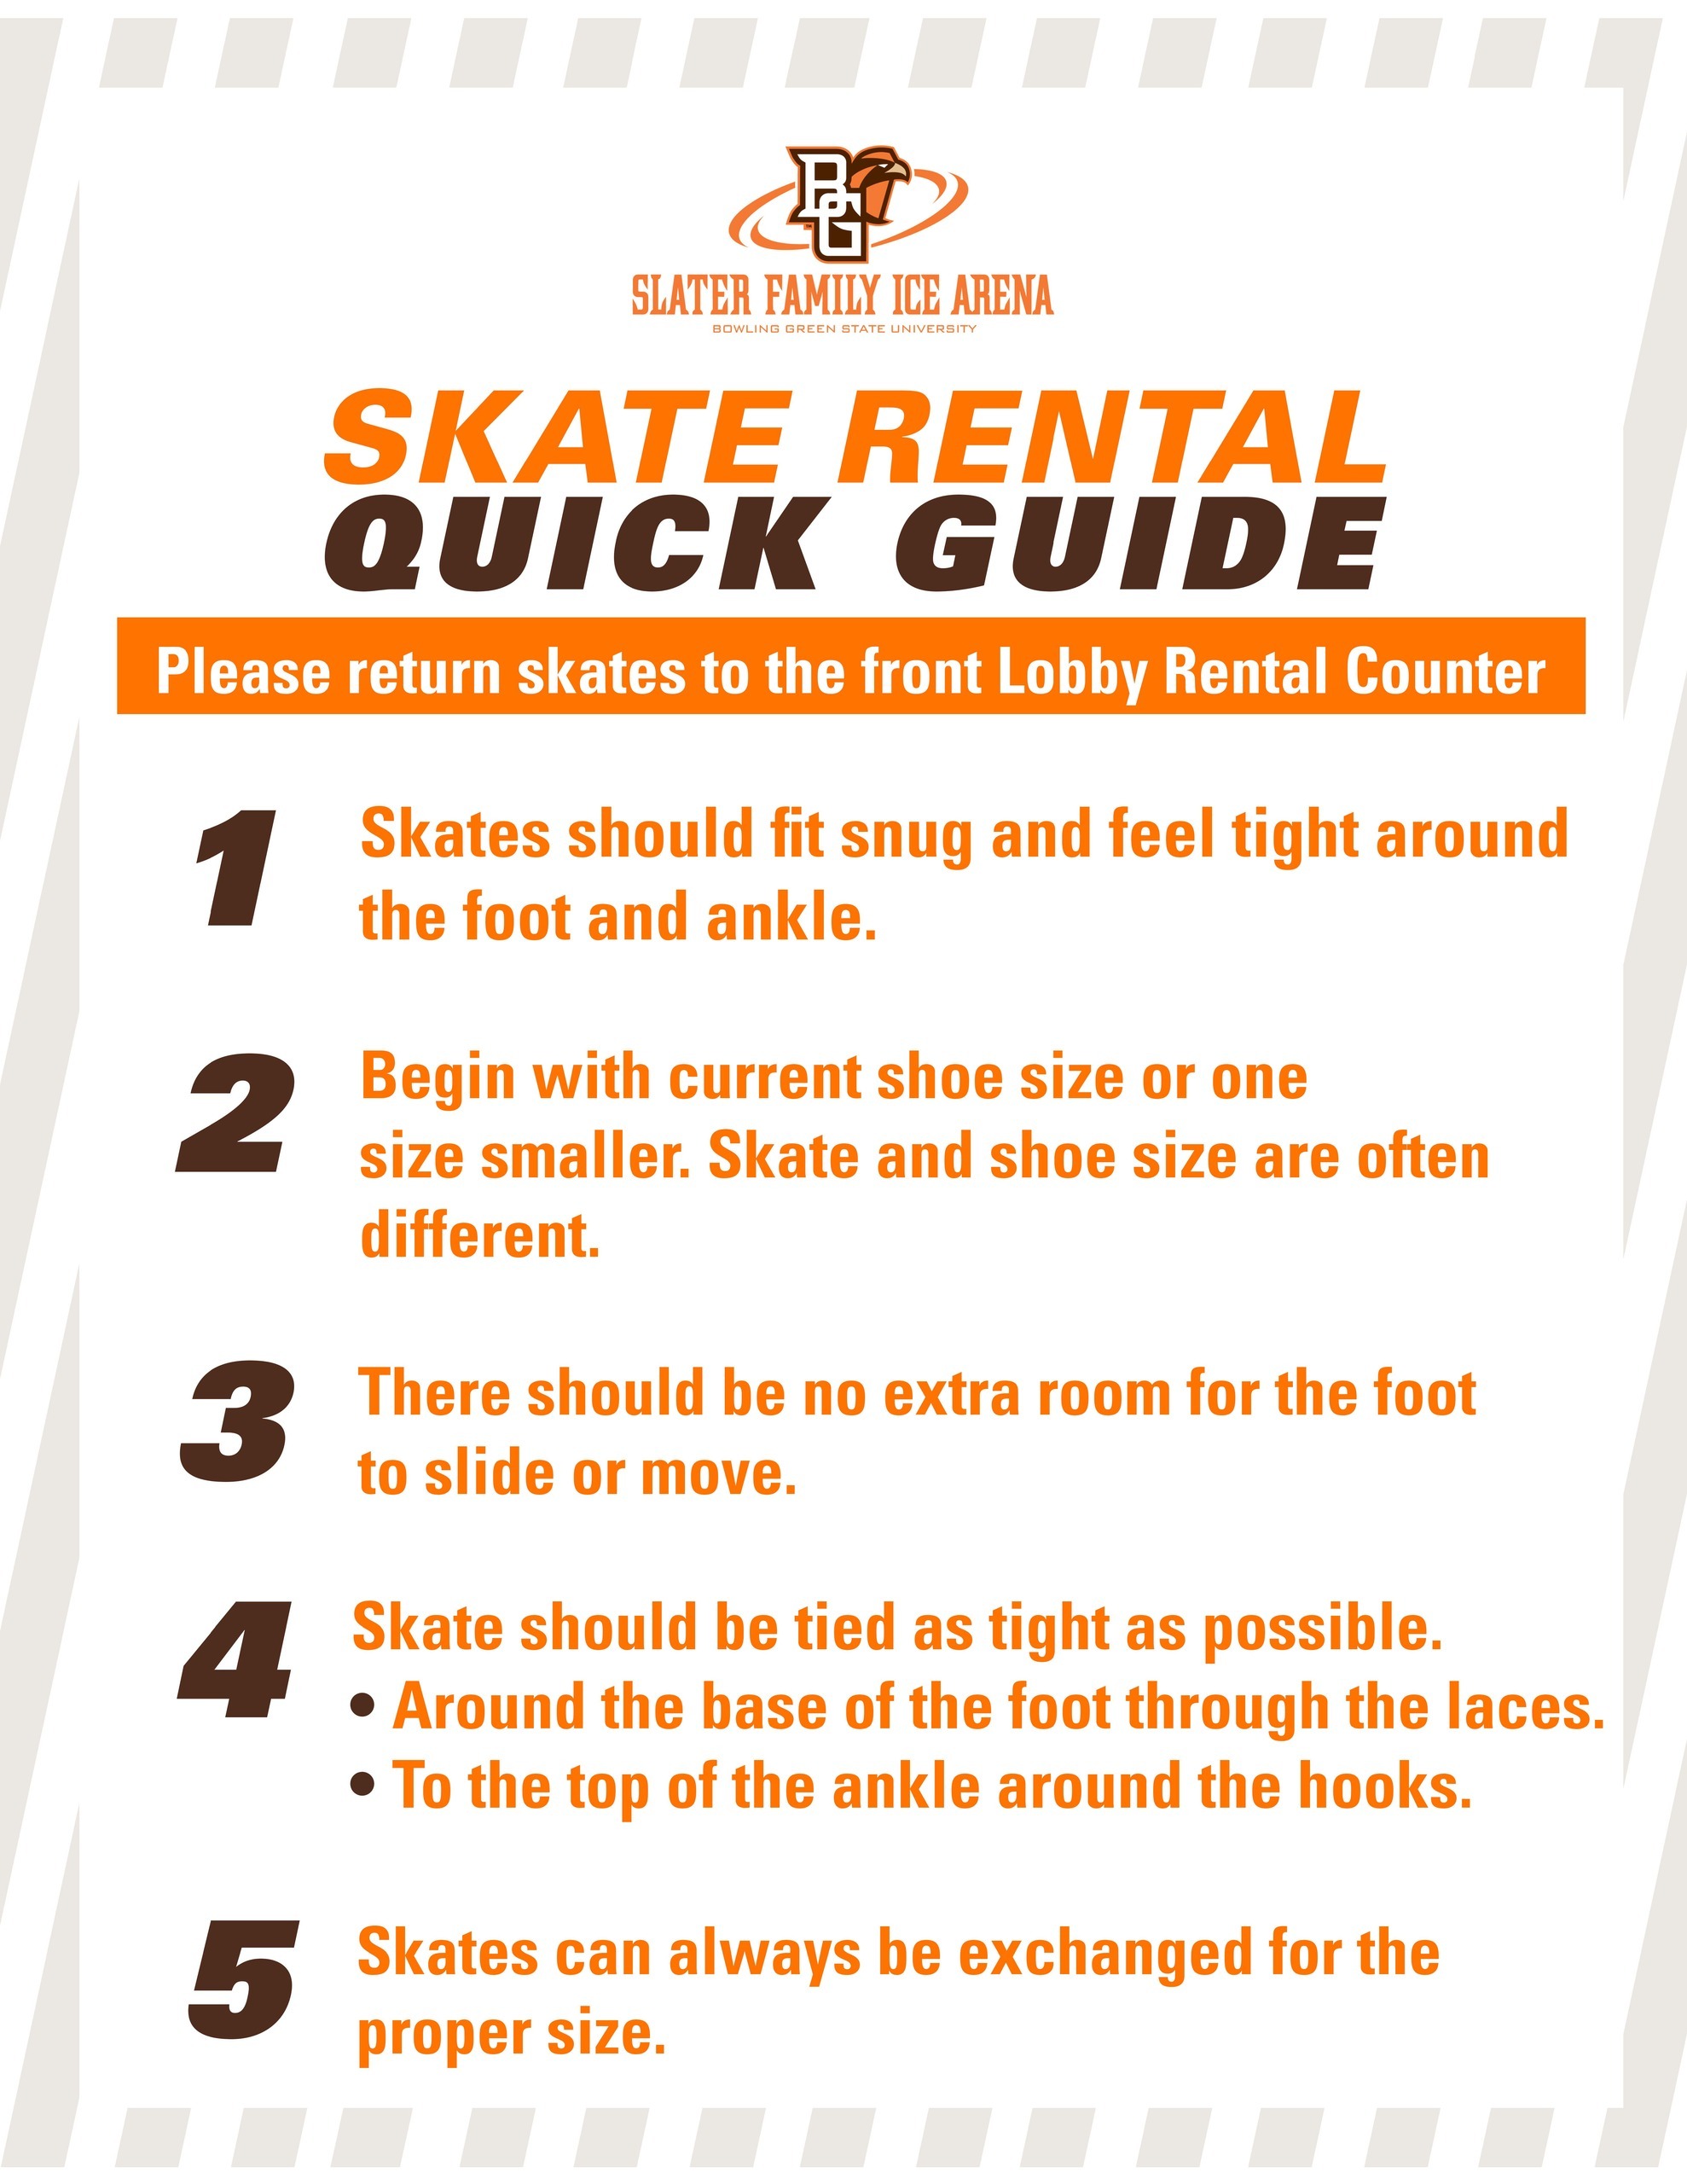 SkateRental-QuickGuide